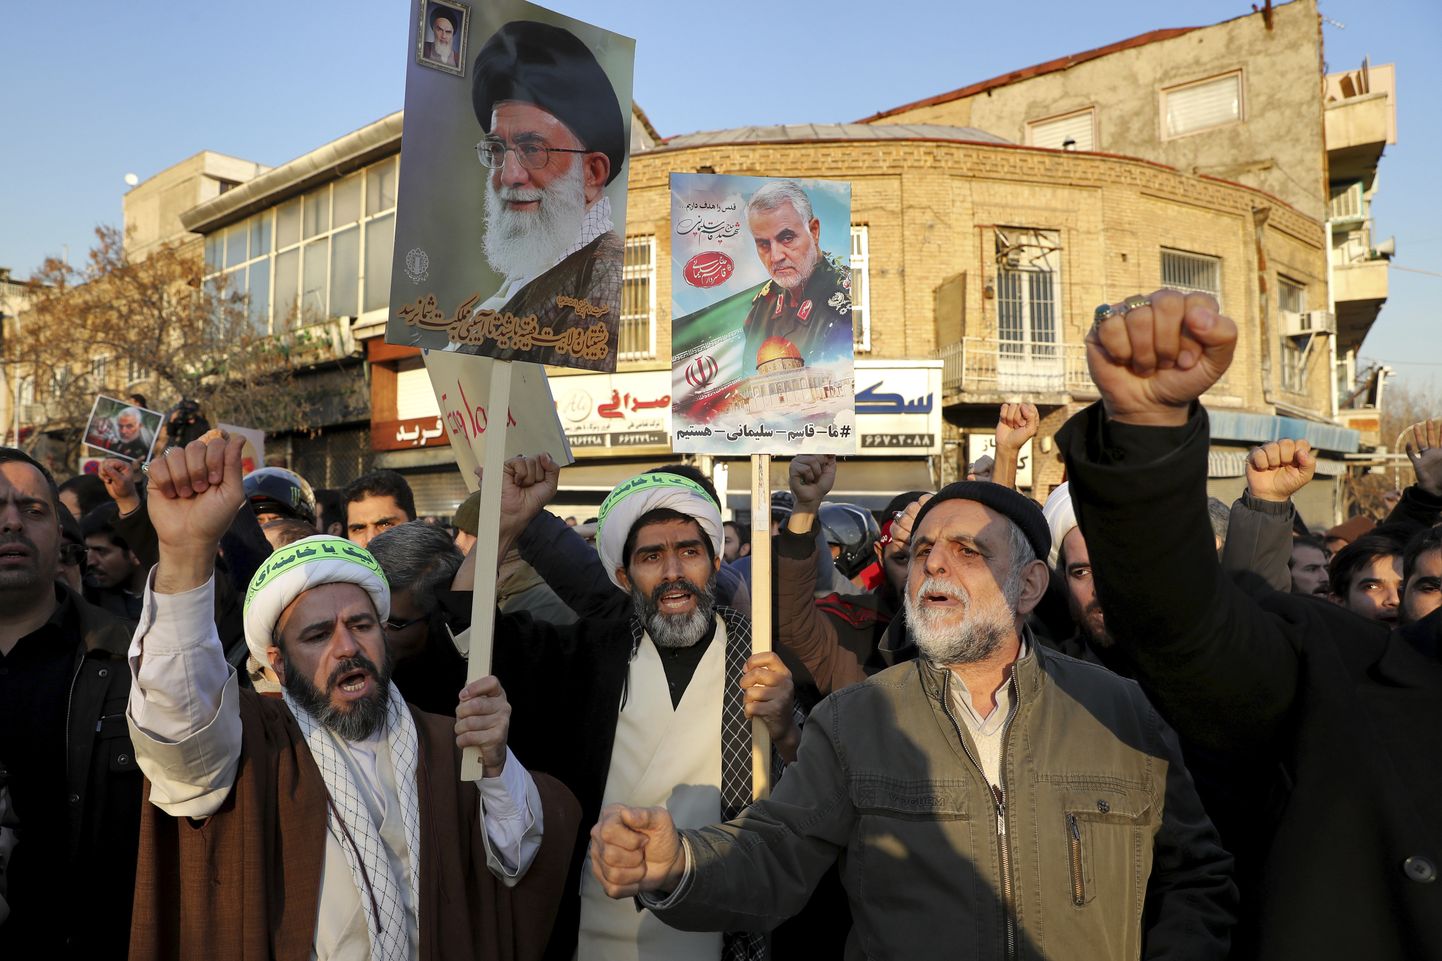 Iraani konservatiivsed meeleavaldajad Teheranis 12. jaanuaril kindral Qasem Soleimani ja ajatolla Ali Khamenei plakatitega.